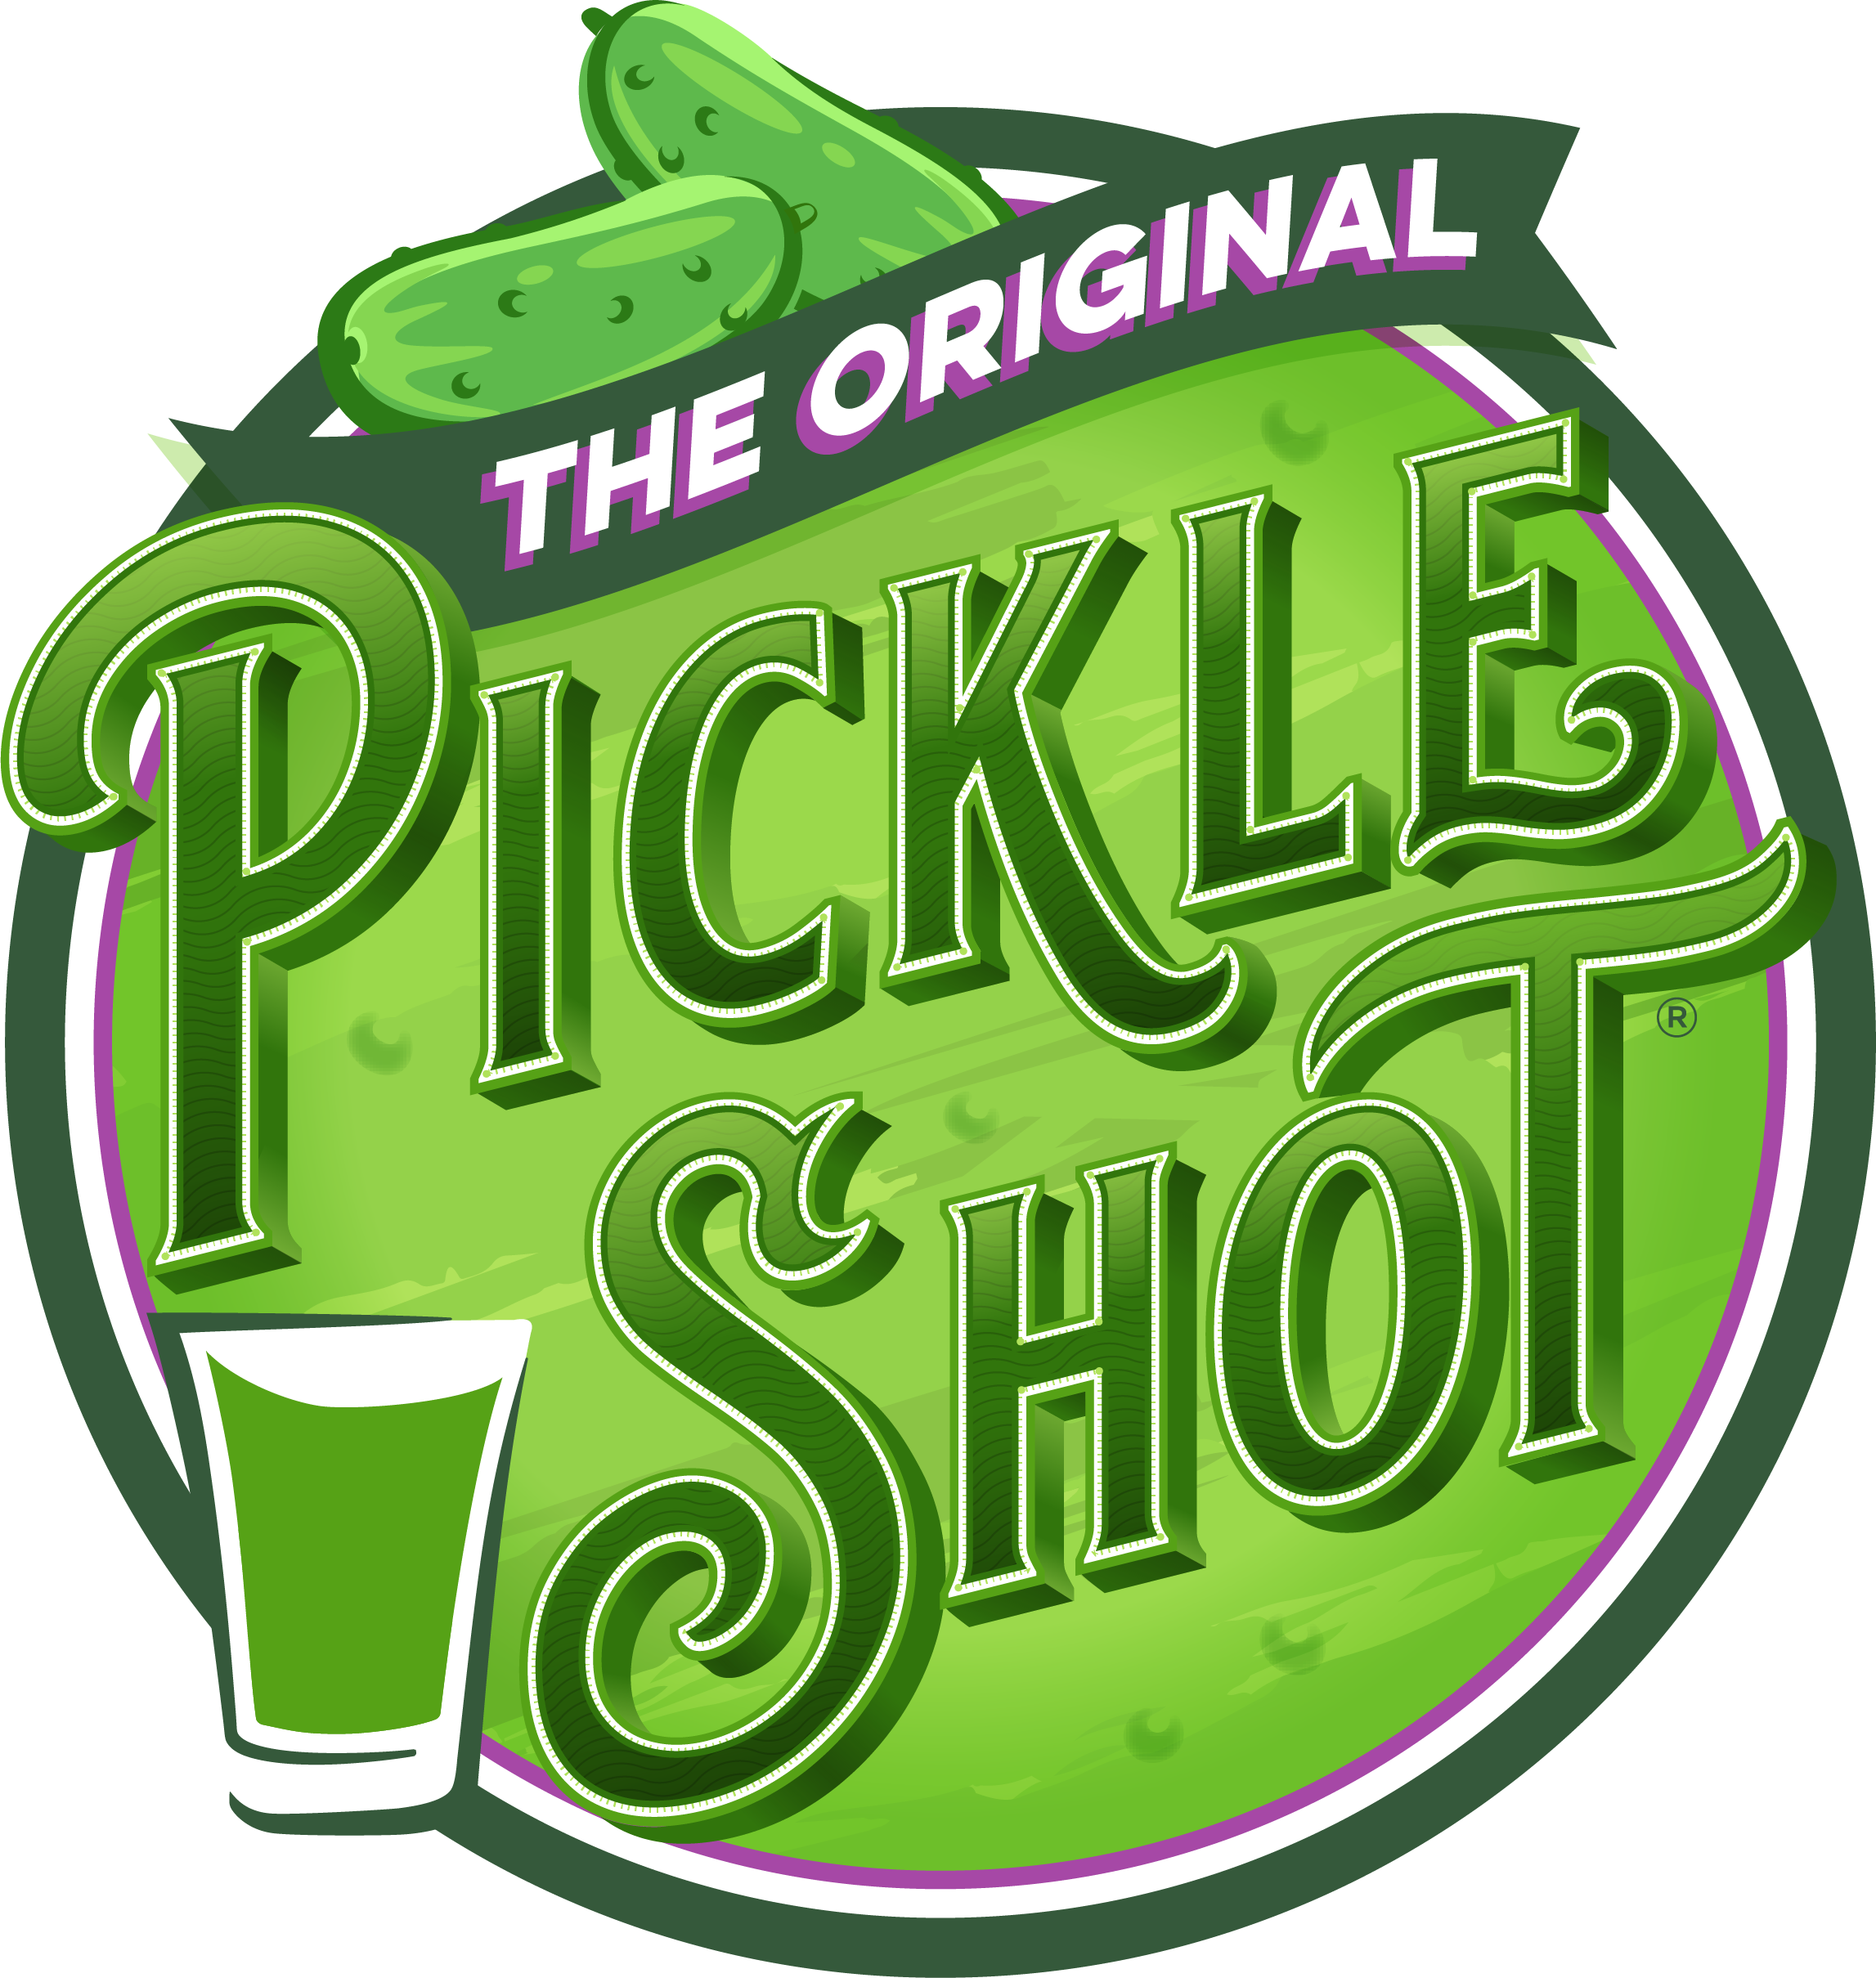 Pickle Shot